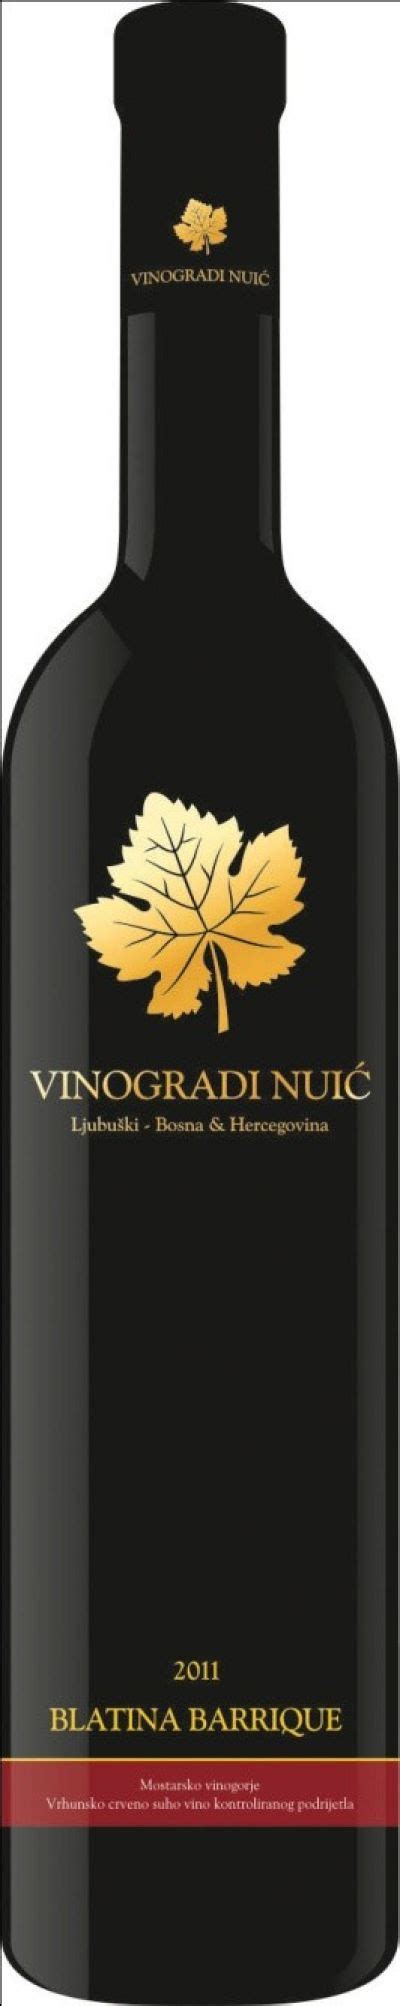 Vinogradi Nuic Blatina Barrique Premium Red Wine